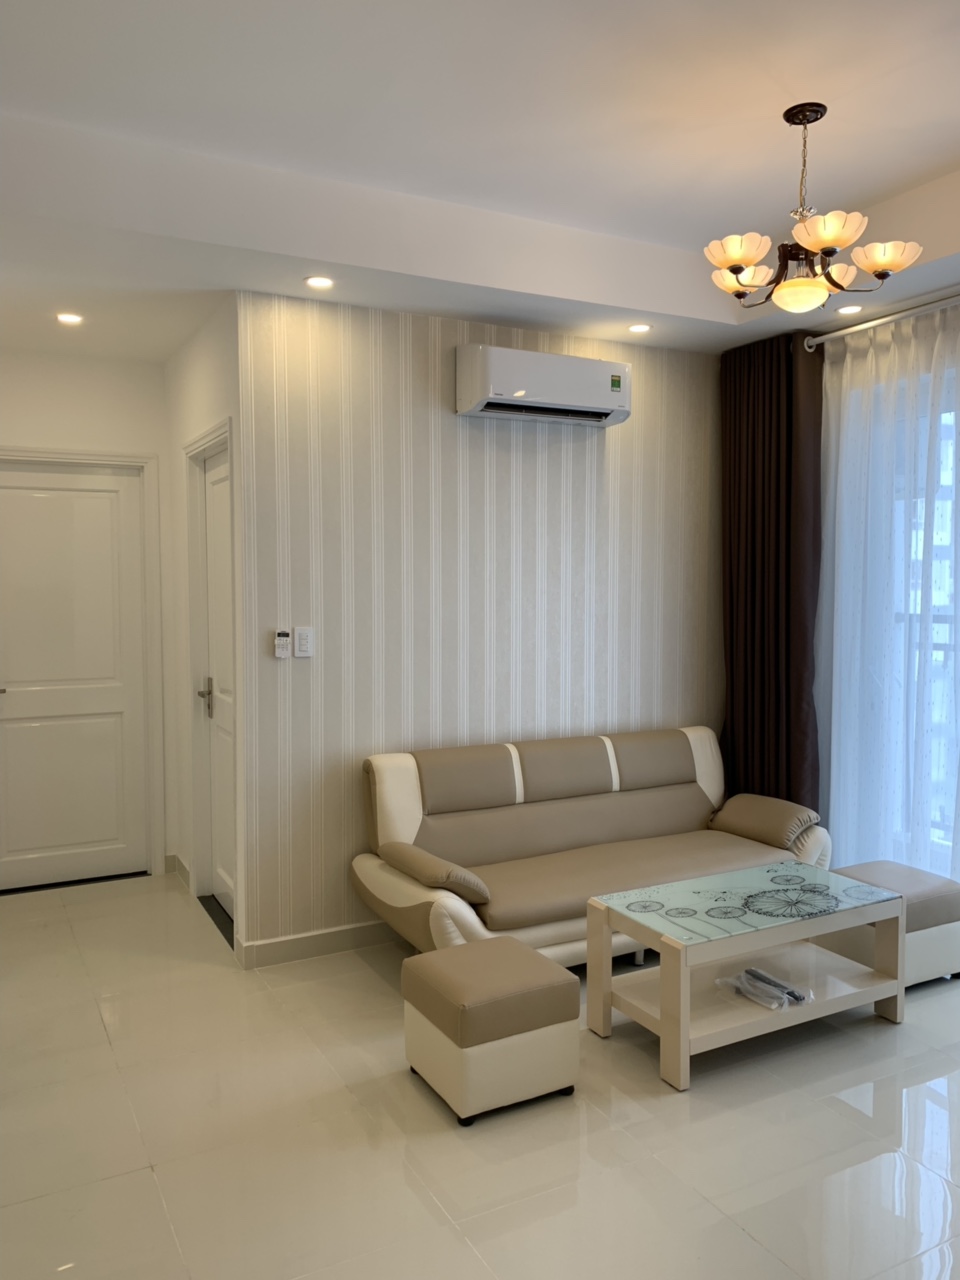 Cho thuê gấp căn hộ chung cư Florita 2 phòng ngủ giá rẻ - Khu Him Lam - Quận 7 